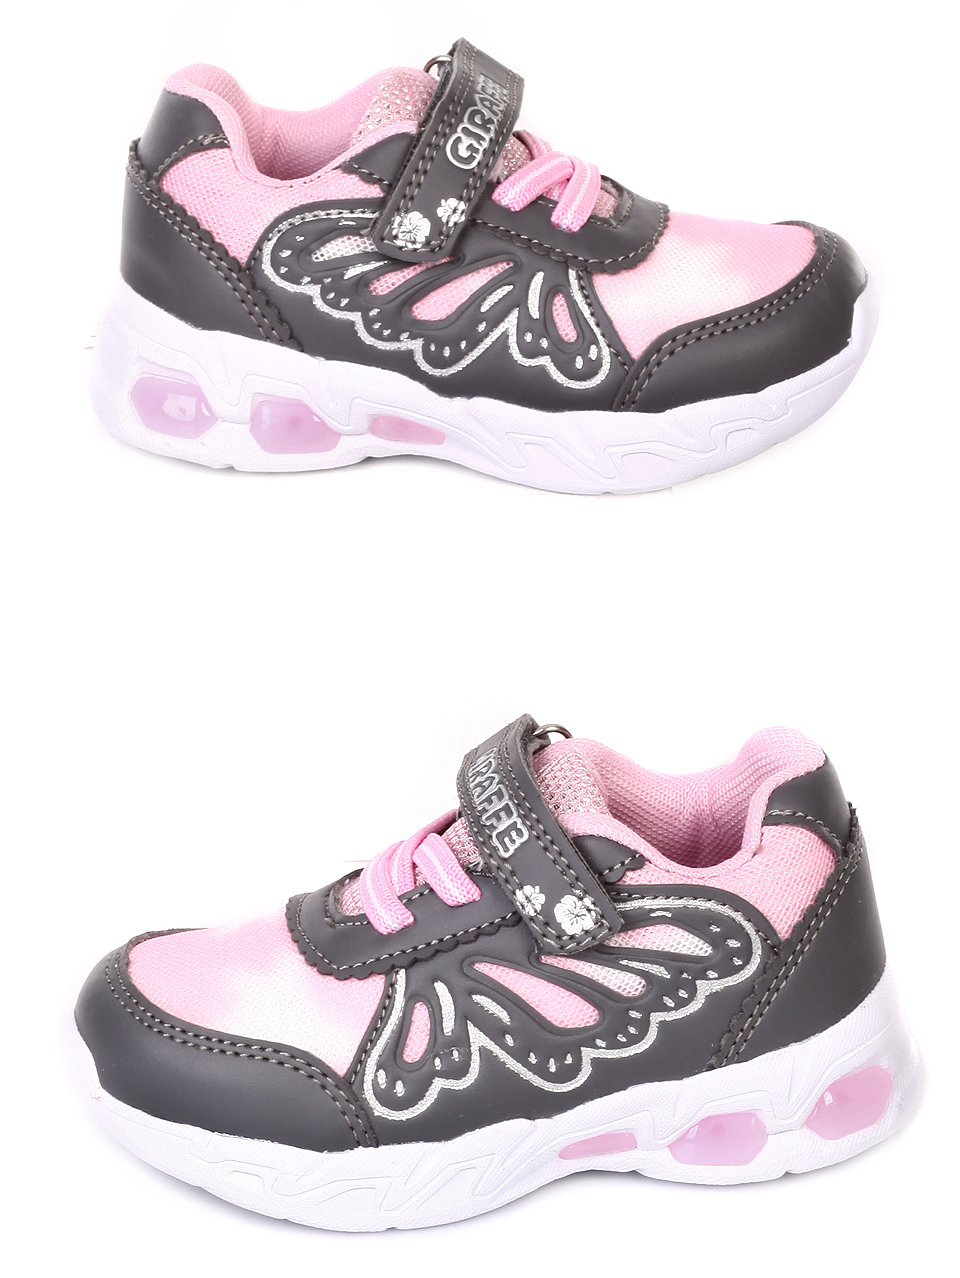 Детски обувки със светещи елементи в розово 18K-19226 d.grey/pink